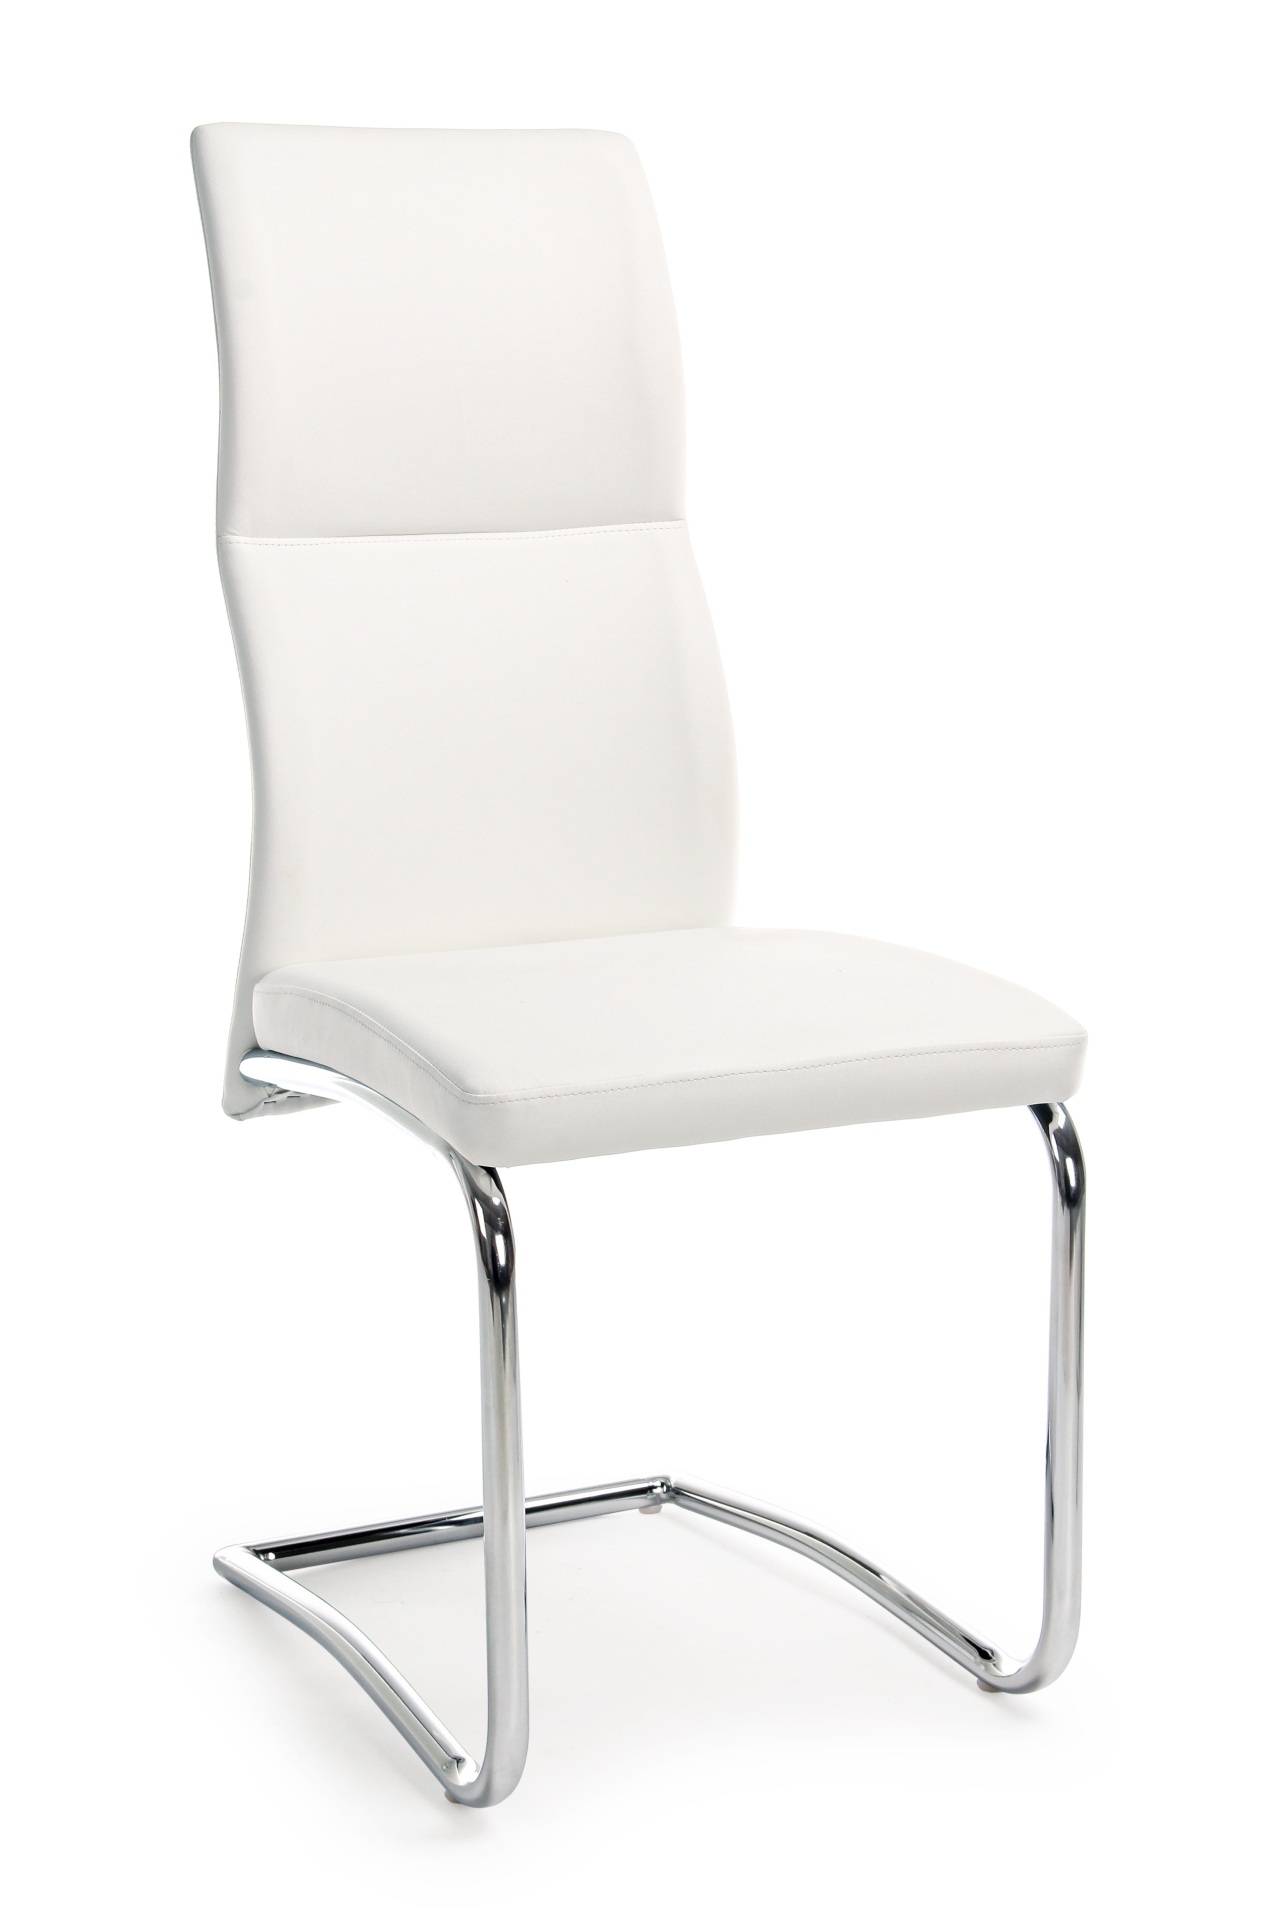 Der Esszimmerstuhl Thelma überzeugt mit seinem modernem Design. Gefertigt wurde der Stuhl aus Kunstleder, welches einen weißen Farbton besitzt. Das Gestell ist aus Metall und ist Silber. Die Sitzhöhe beträgt 47 cm.